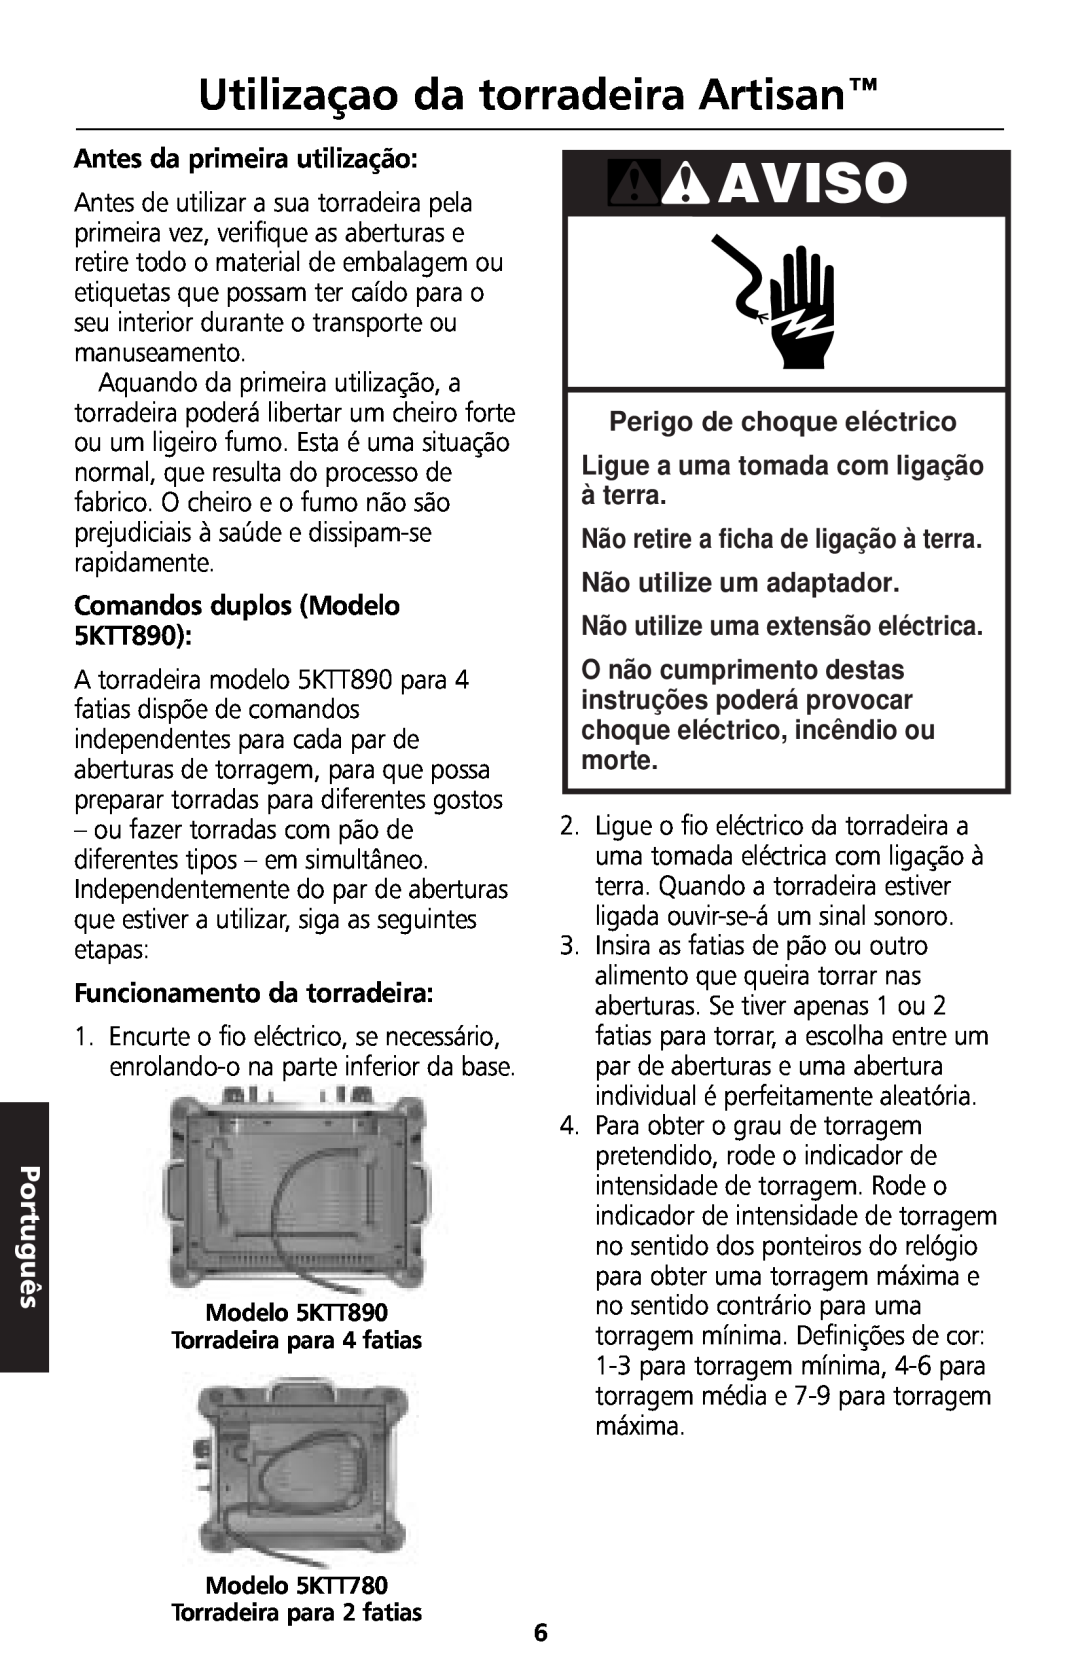 KitchenAid 5KTT890 manual Utilizaçao da torradeira Artisan, Aviso, Português, Perigo de choque eléctrico 